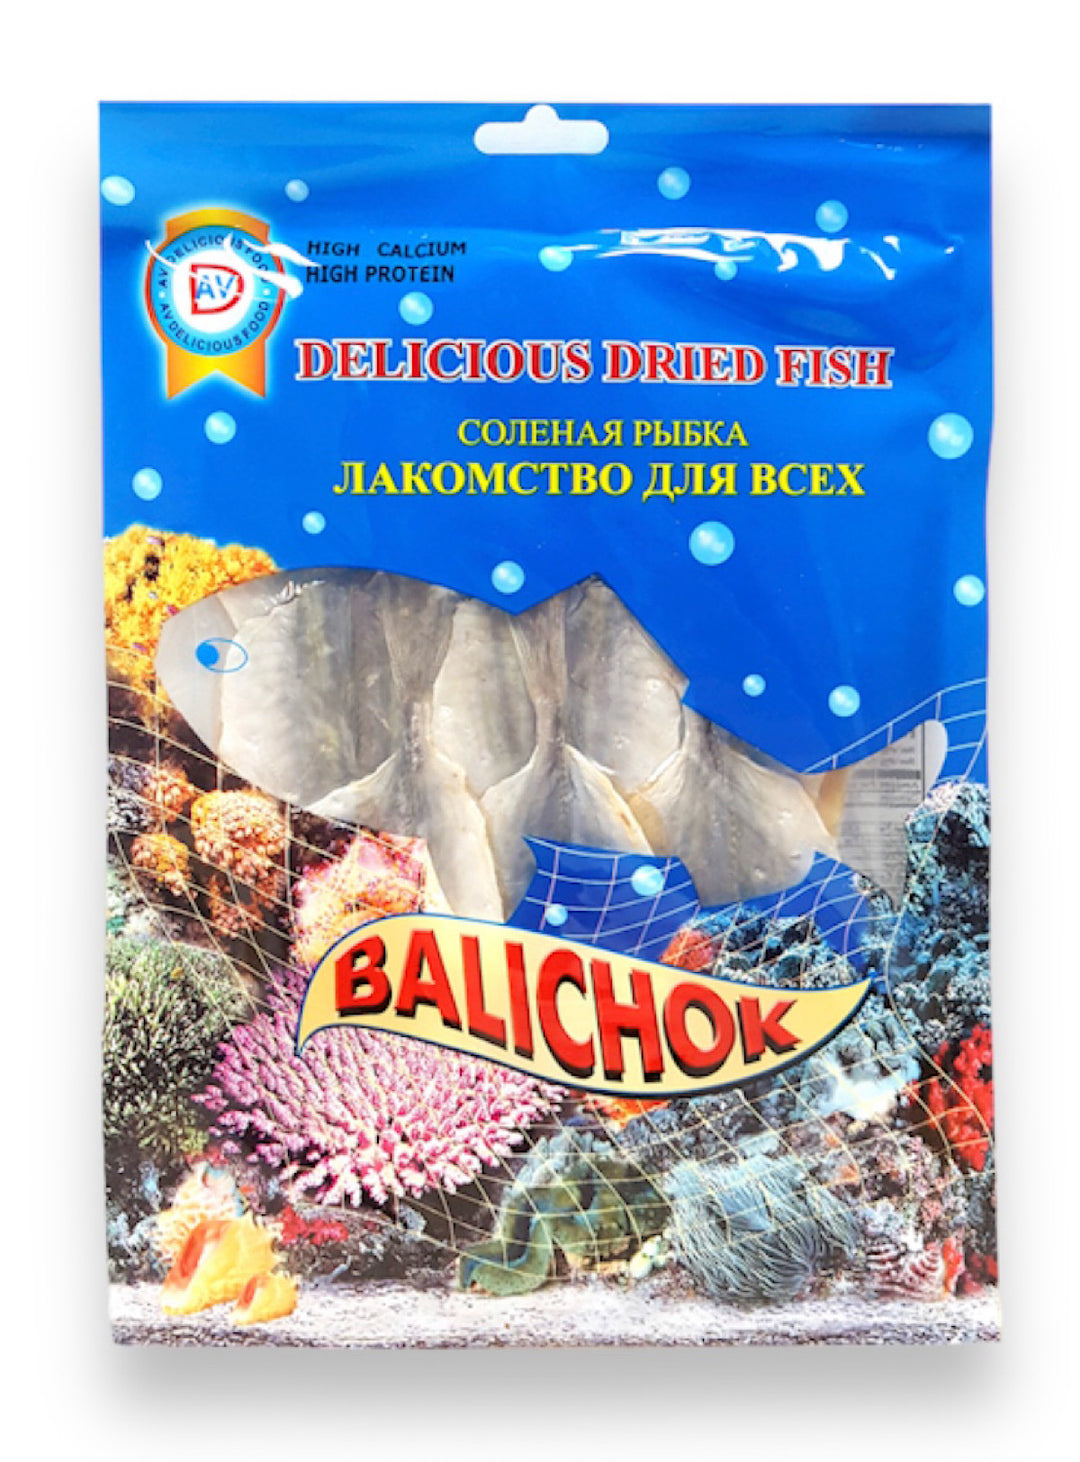 Dired Fish Balichok - Delicious - 90g